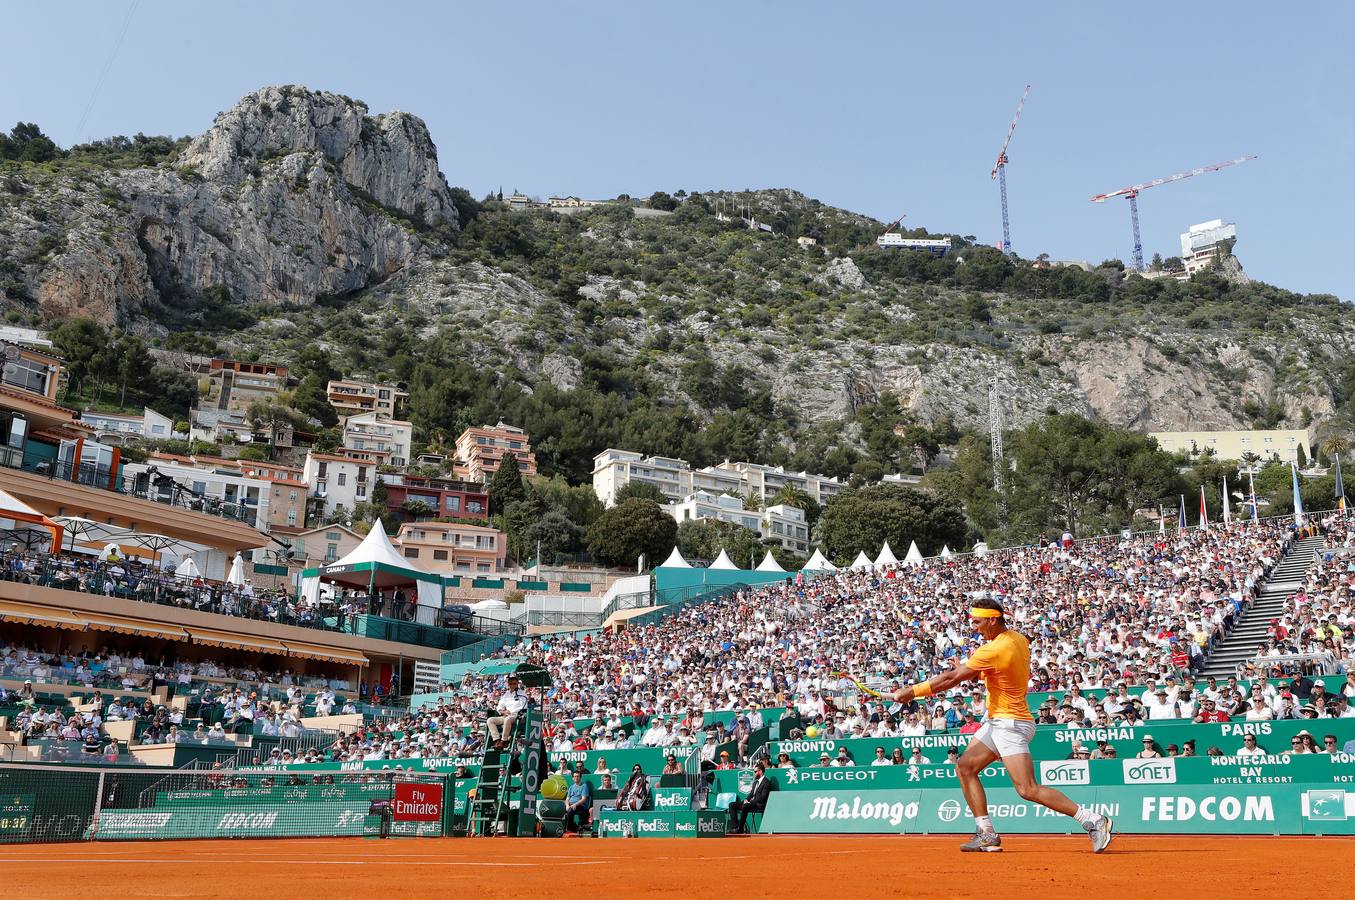 Rafa Nadal busca su undécimo título en el MAsters 1000 de Montecarlo. SU primer partido ha sido ante Bedene.